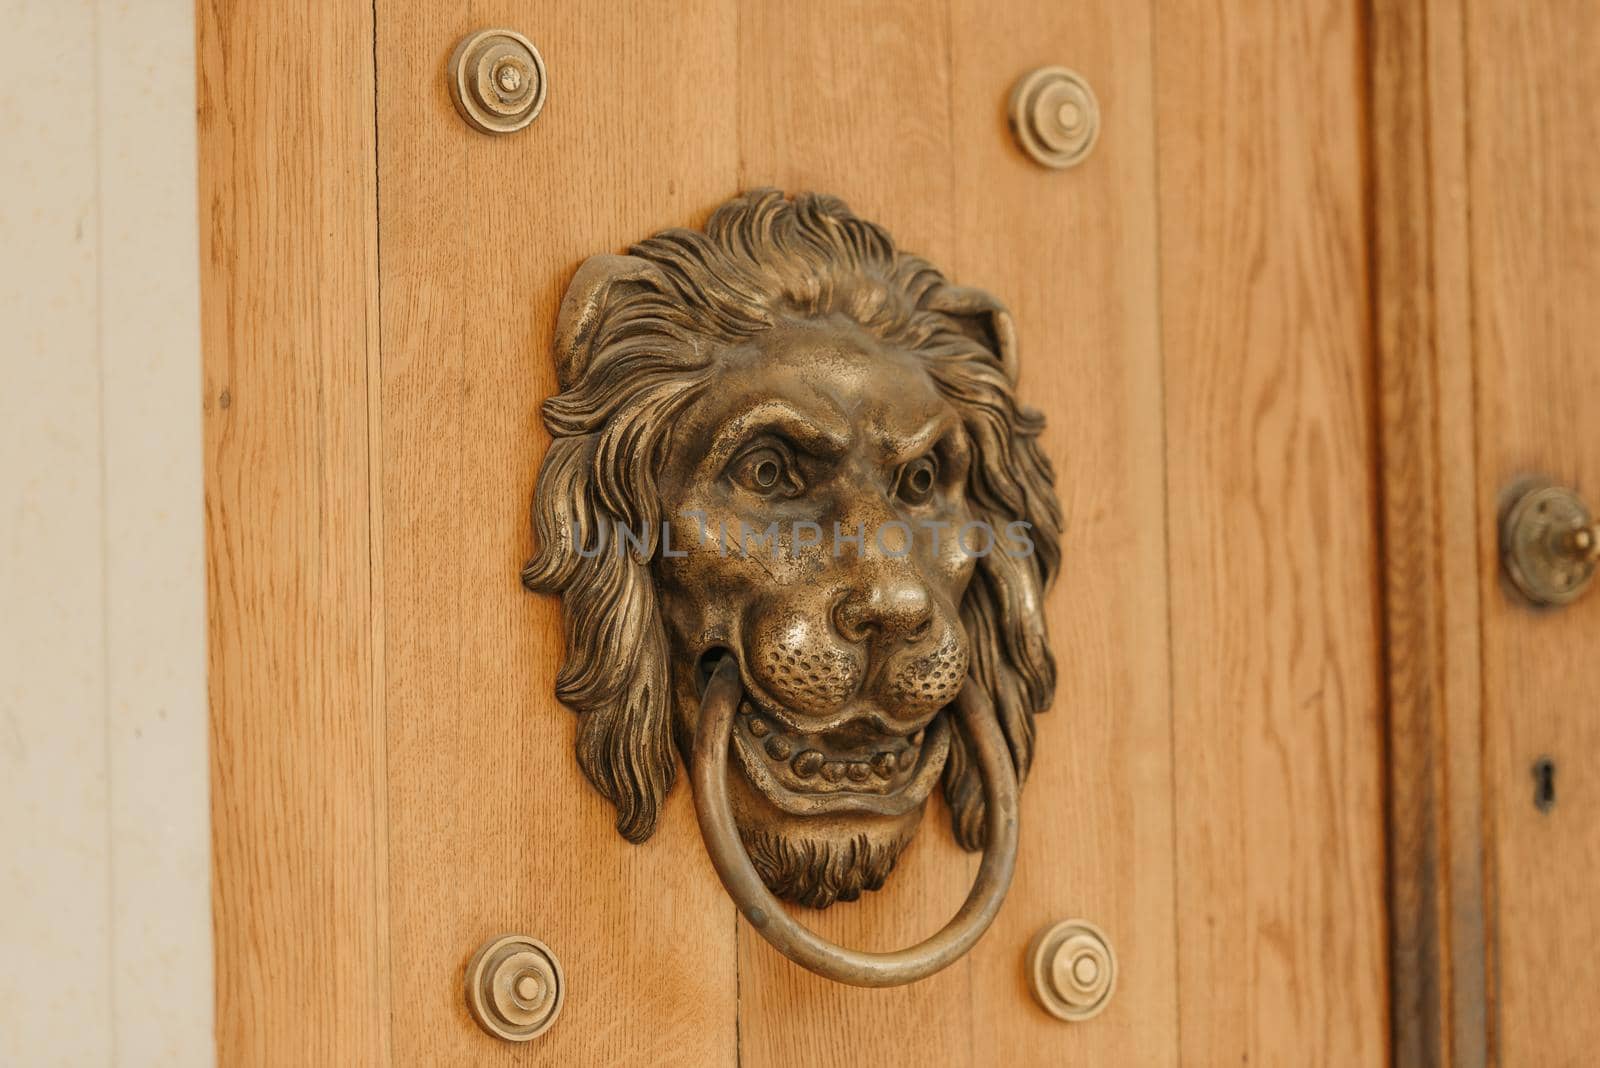 The golden lion on the wooden door. Door knocker in the Lazienki Park or Royal Baths Park